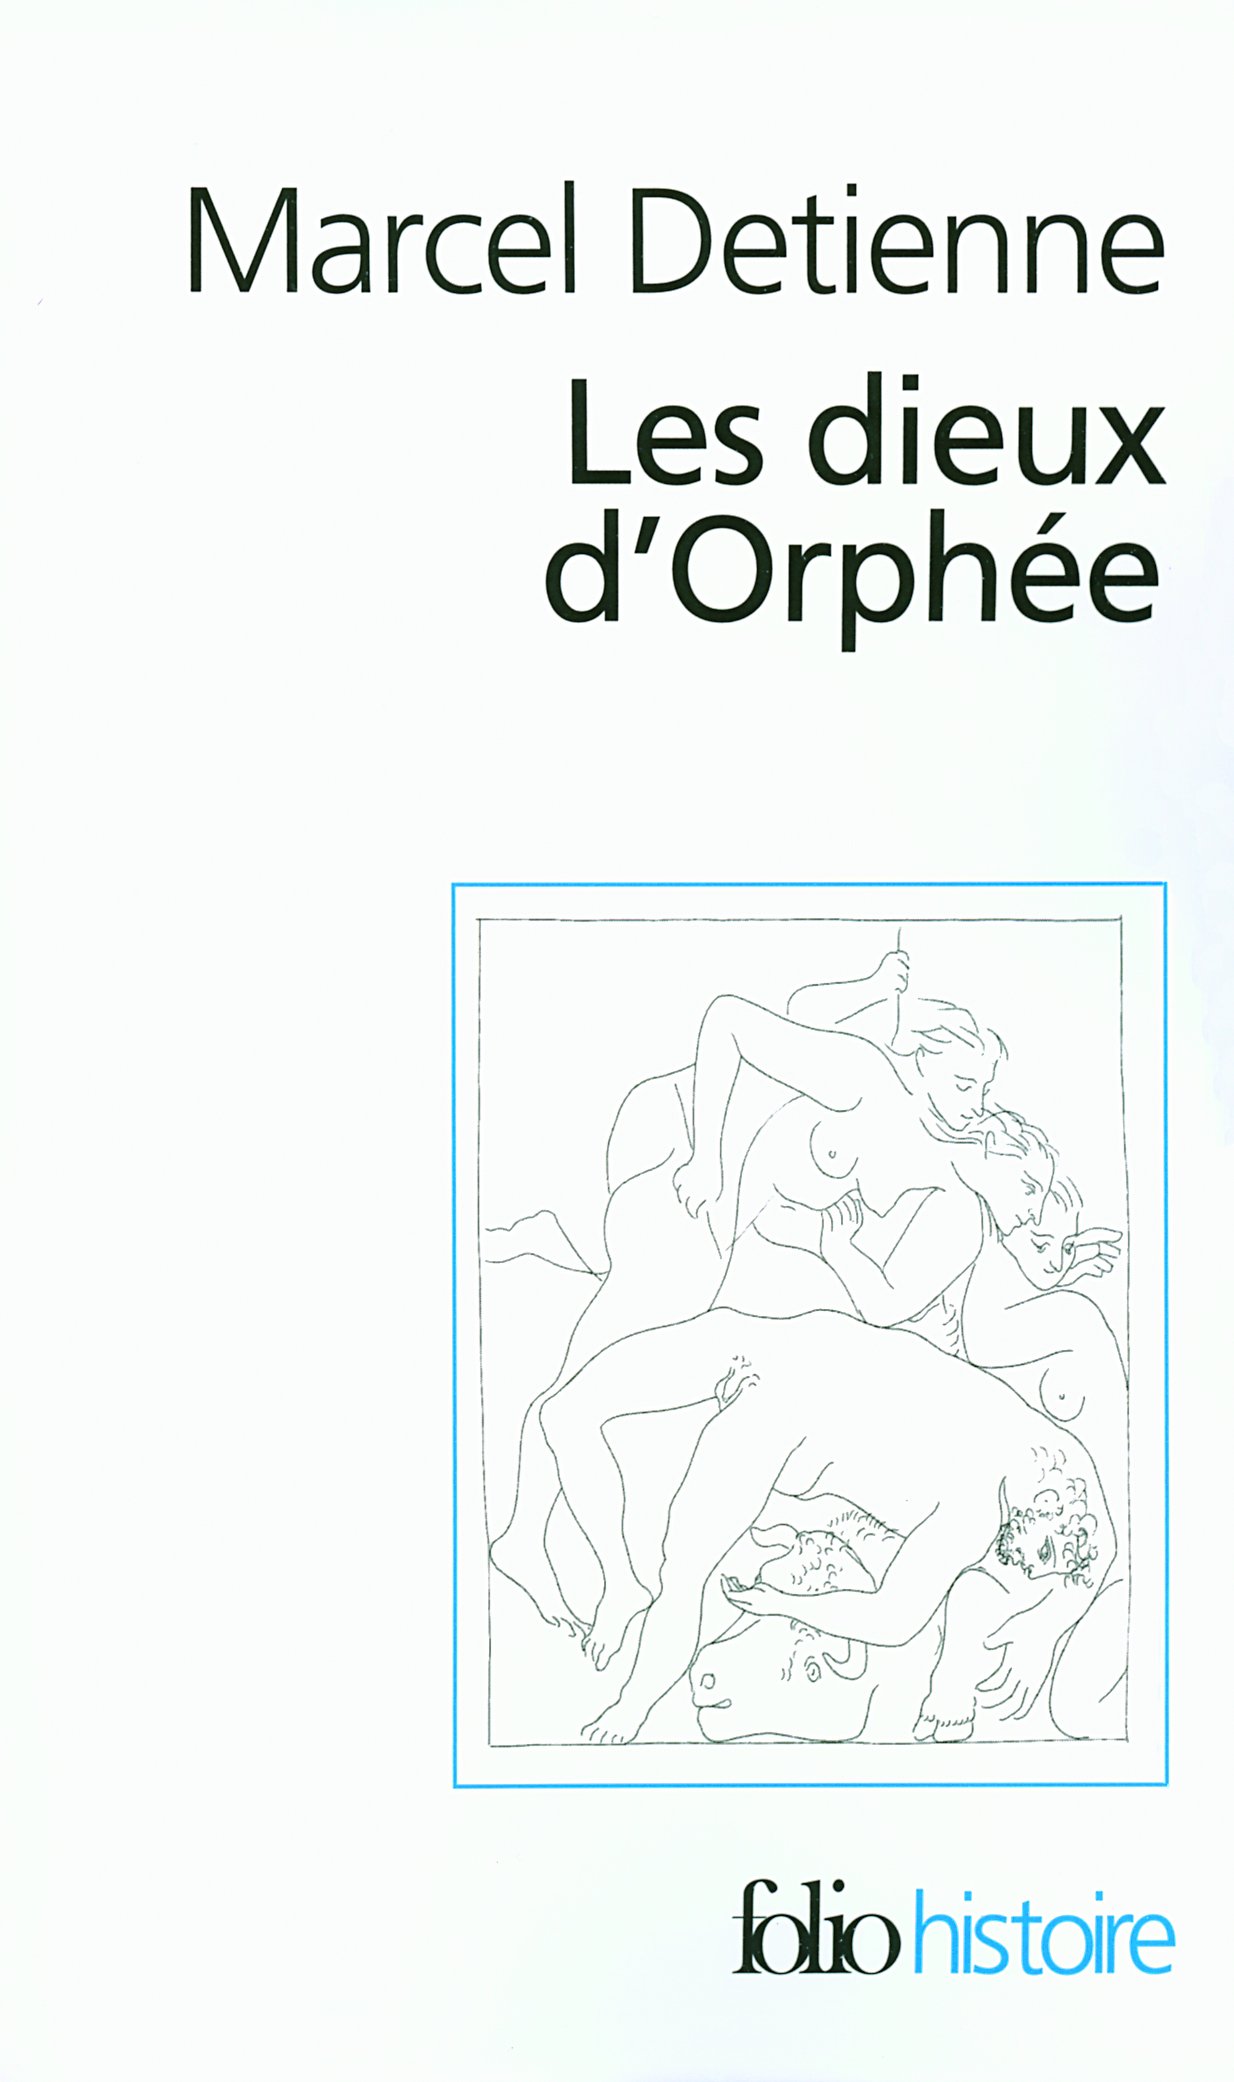 Les dieux d'Orphée, 2007, 234 p.